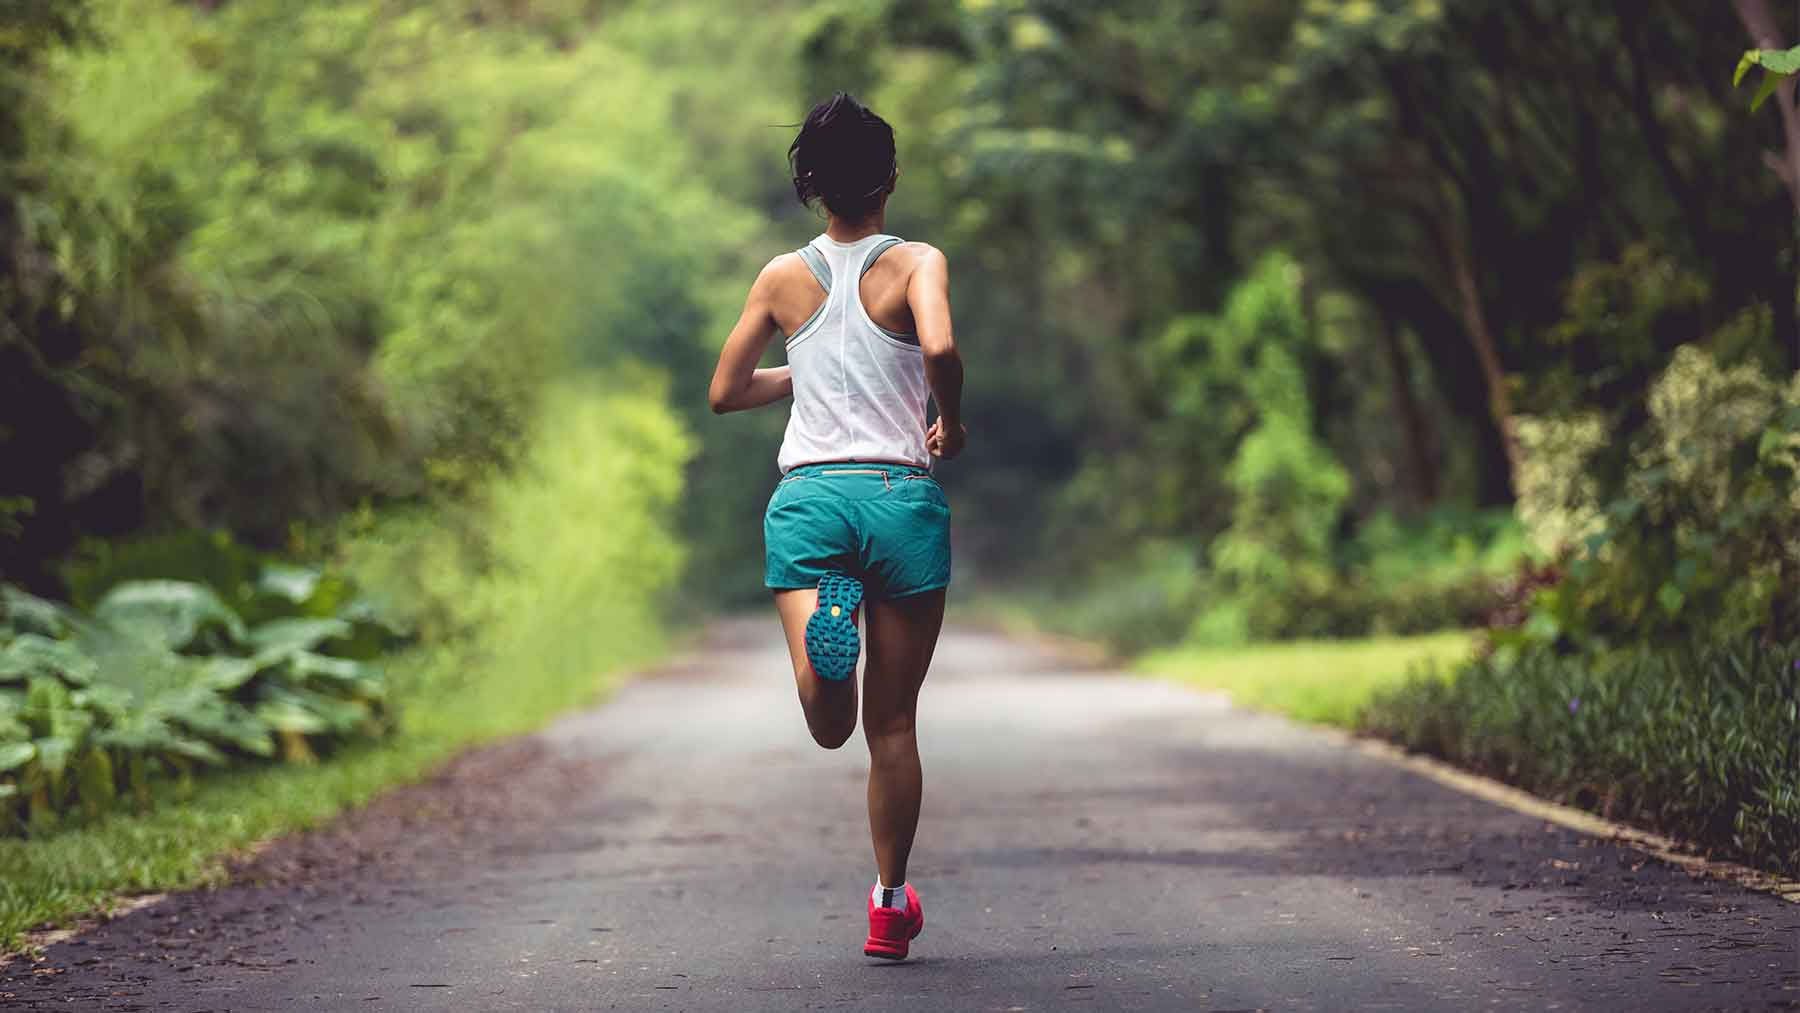 How Should I Train For A Half Marathon